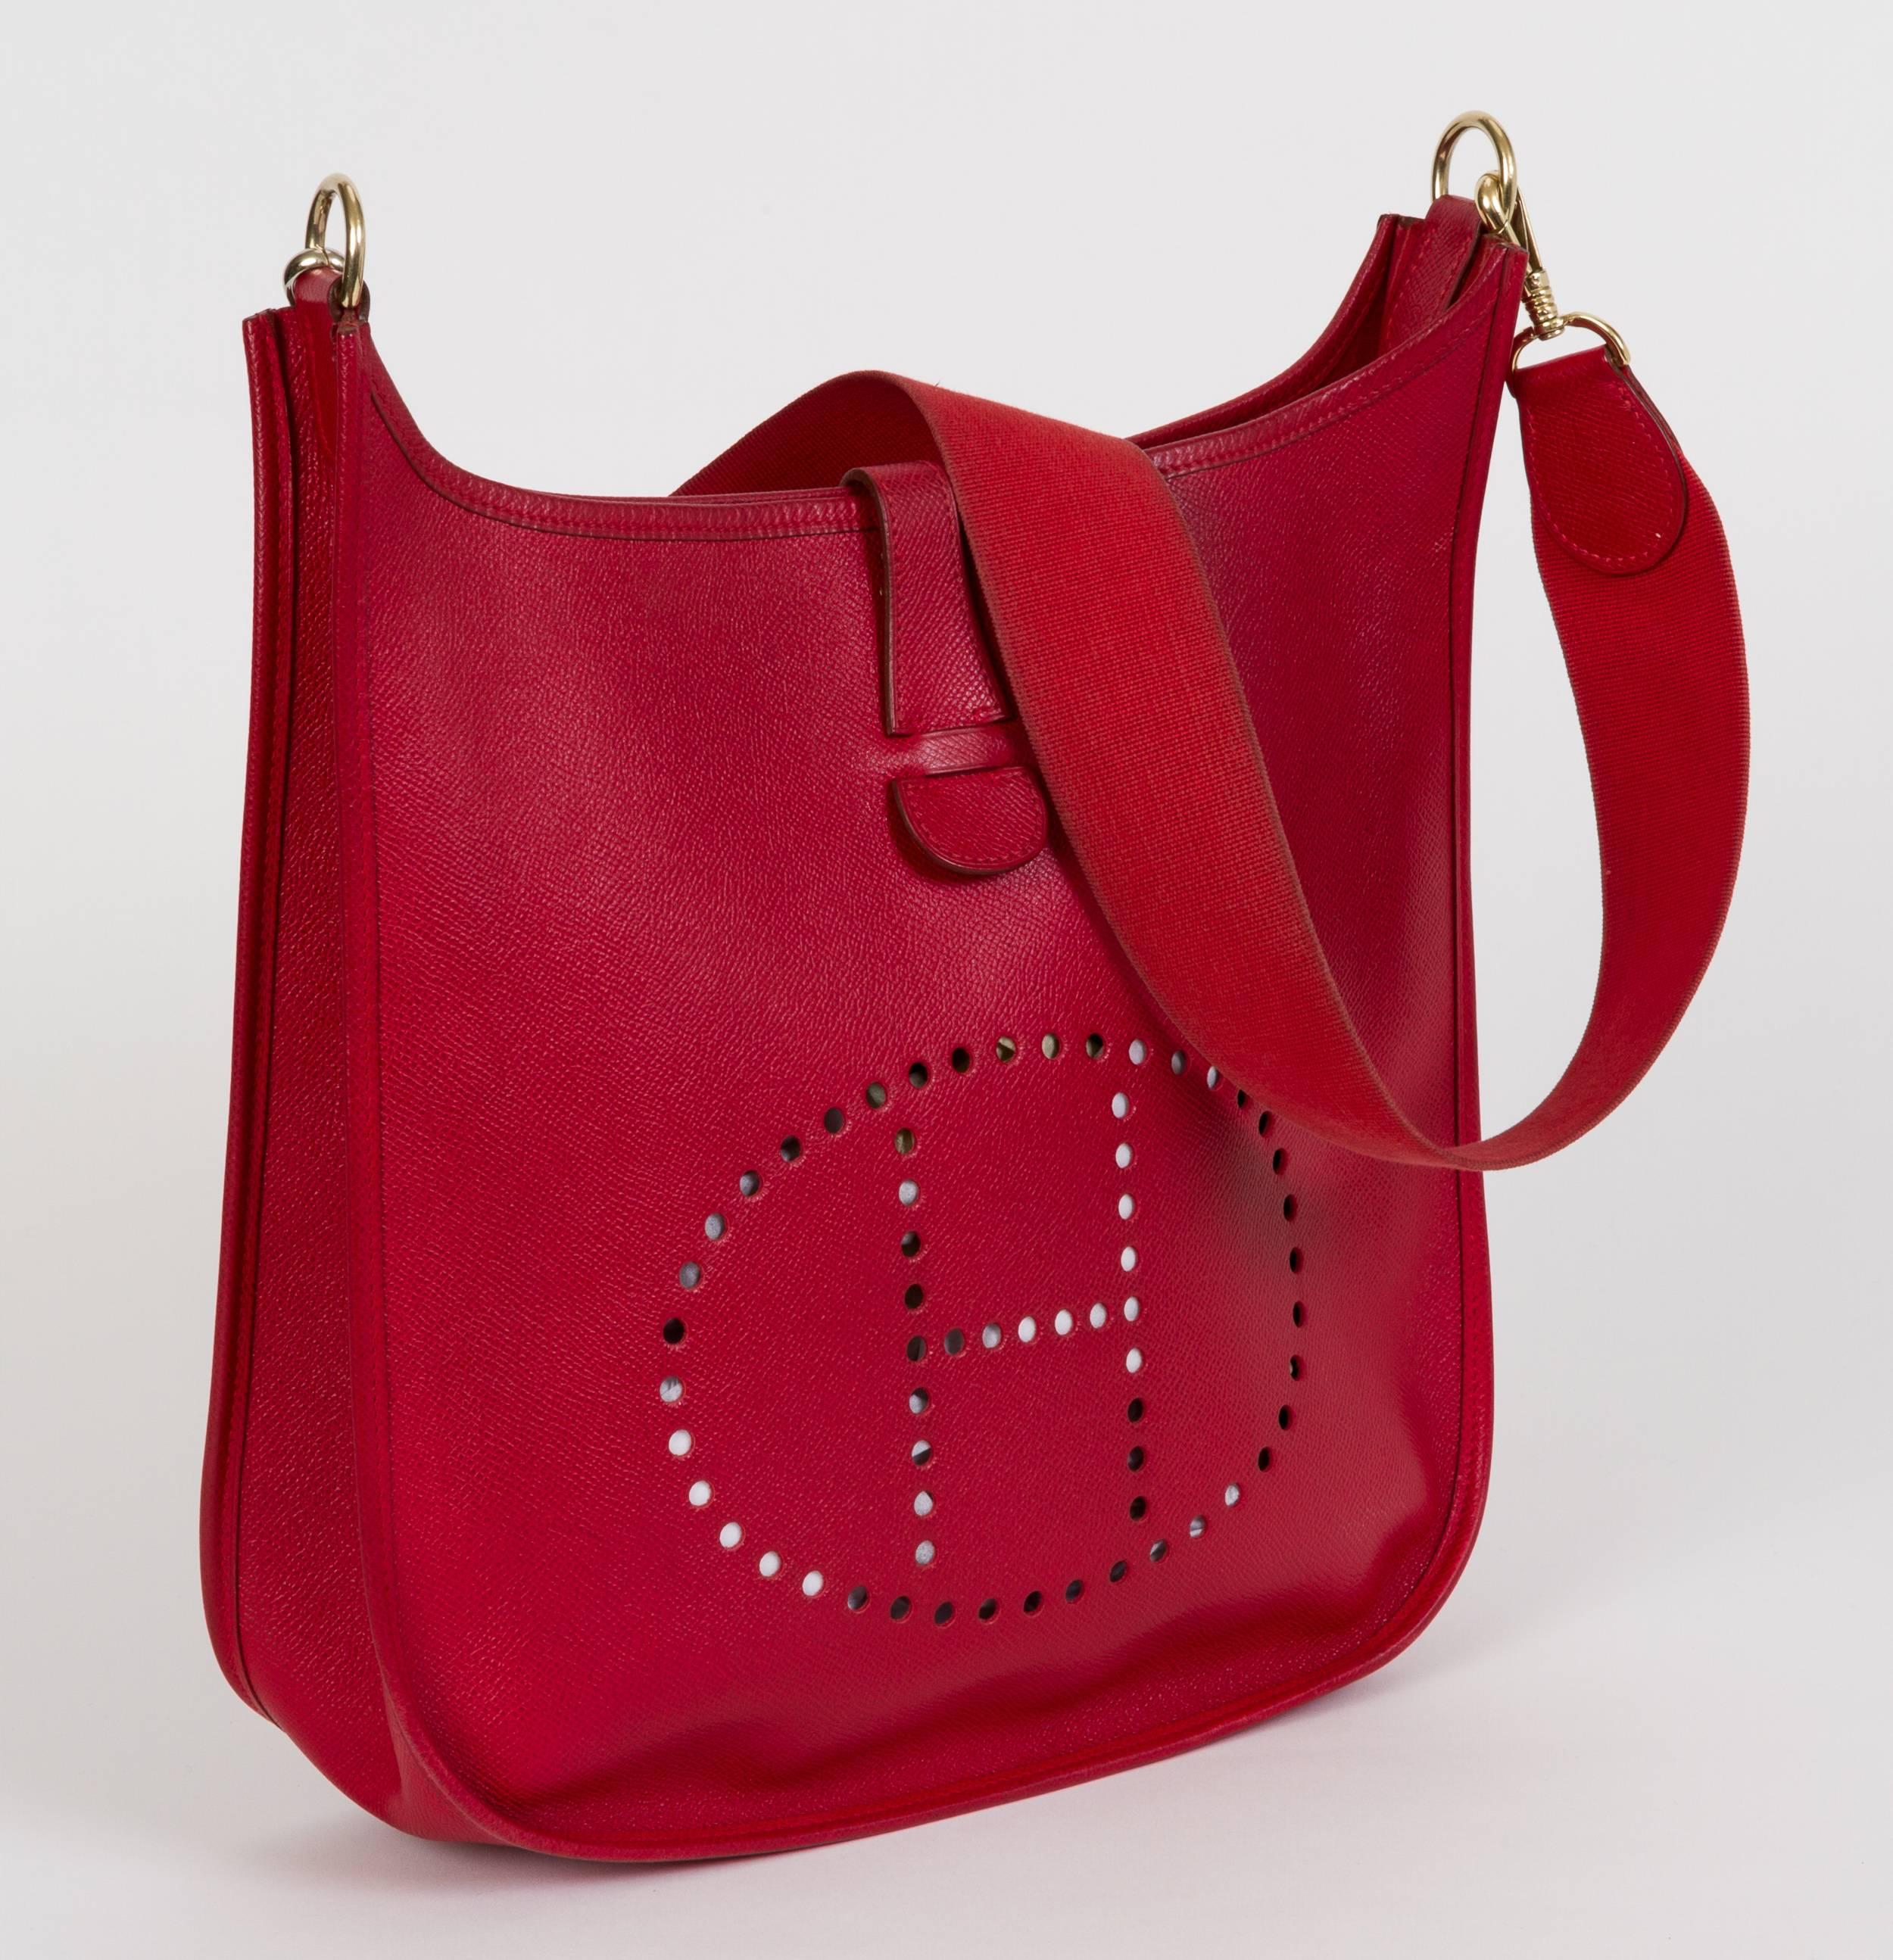 Hermès GM Evelyne bag in rouge vif Epsom leather with goldtone hardware. Shoulder drop, 18